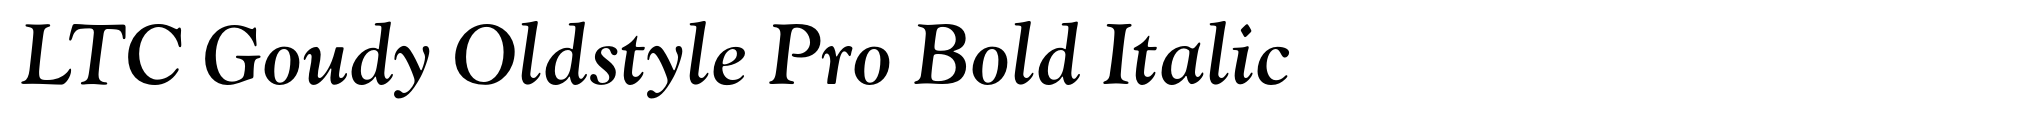 LTC Goudy Oldstyle Pro Bold Italic image